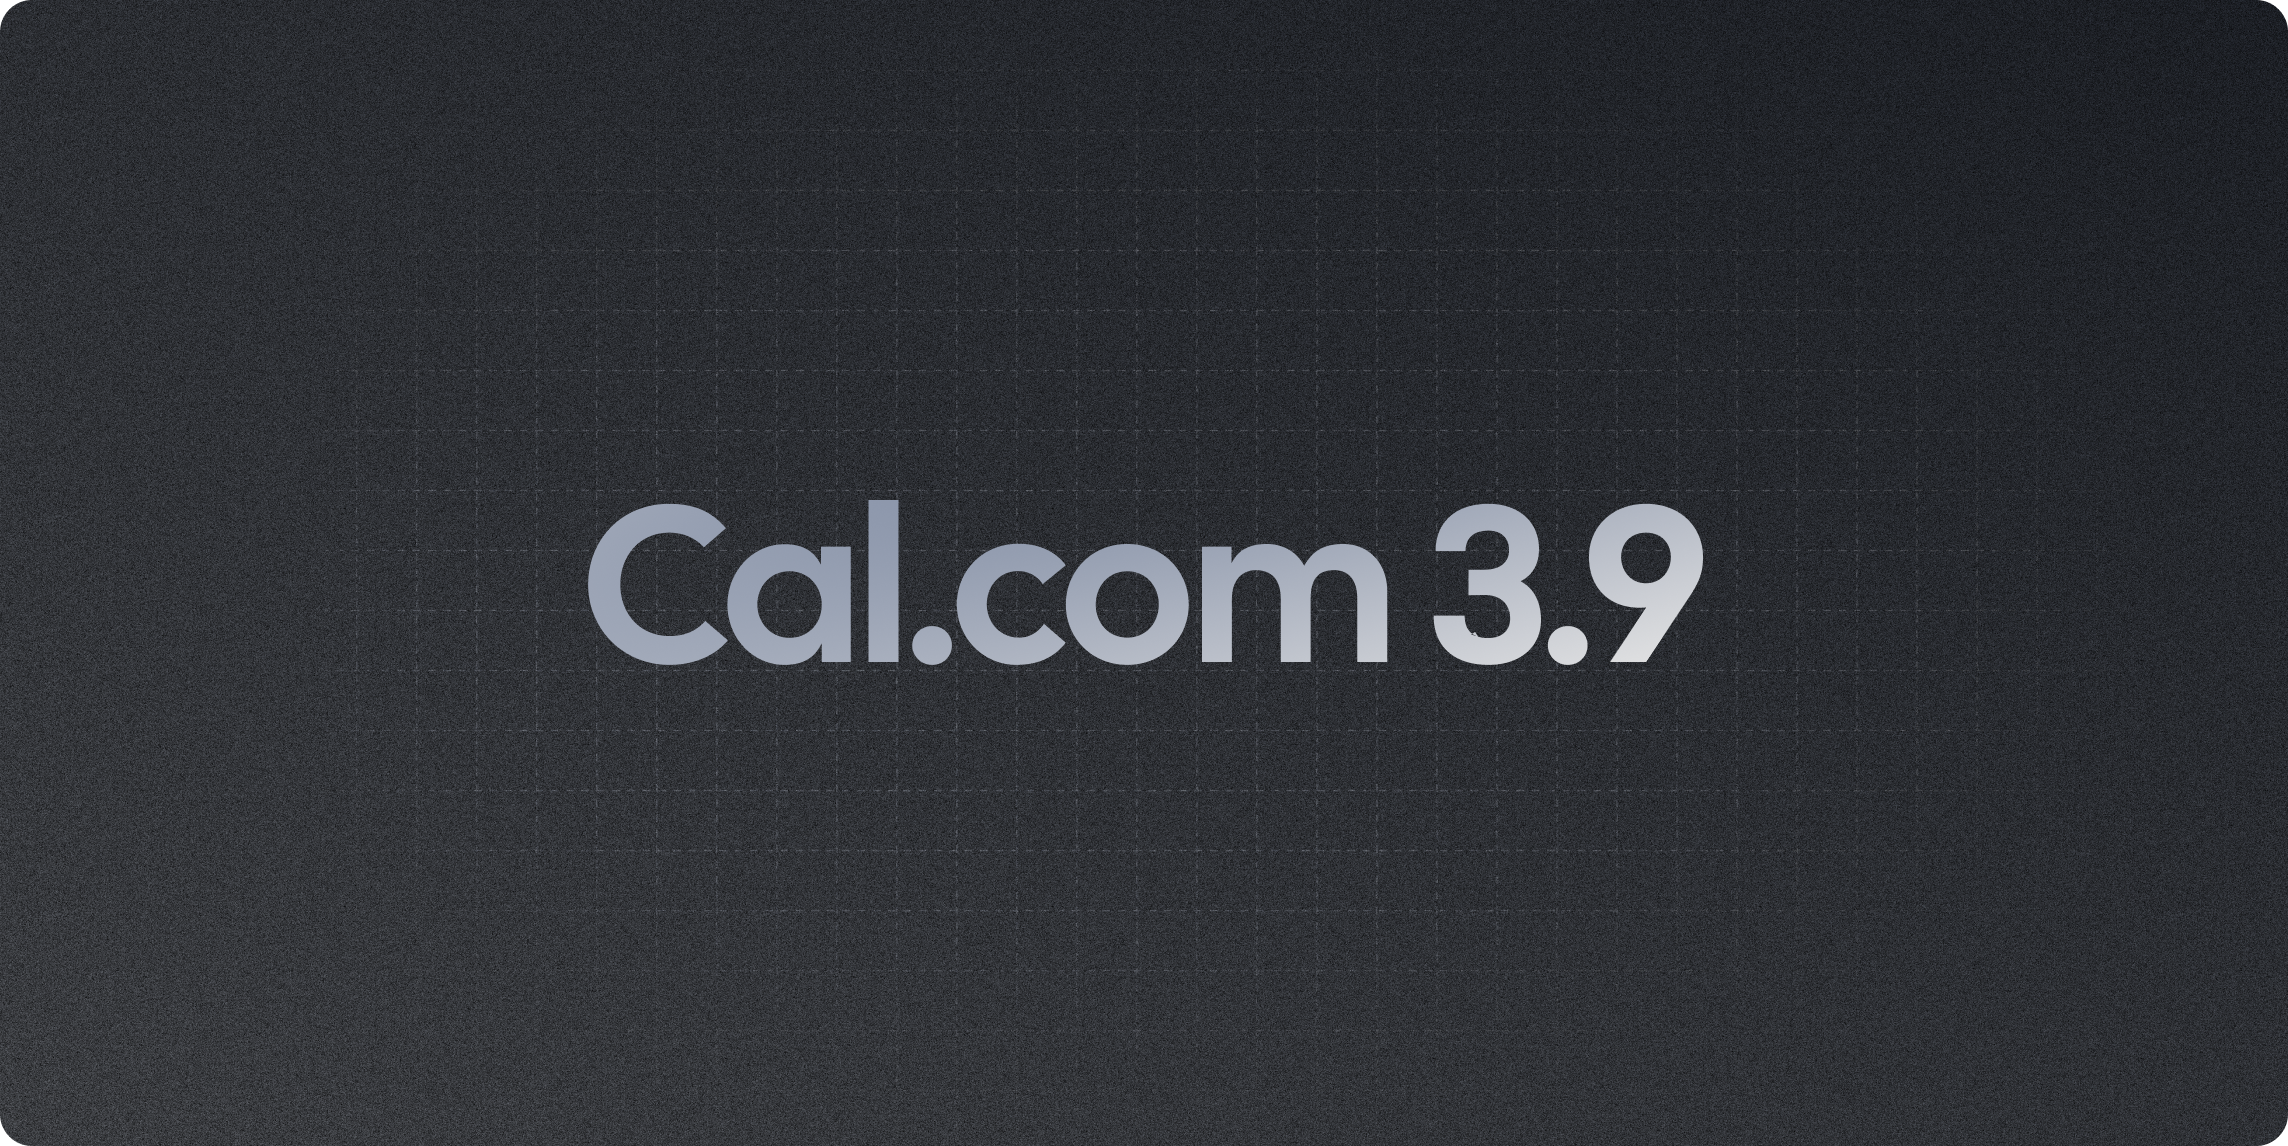 Cal.com v3.9